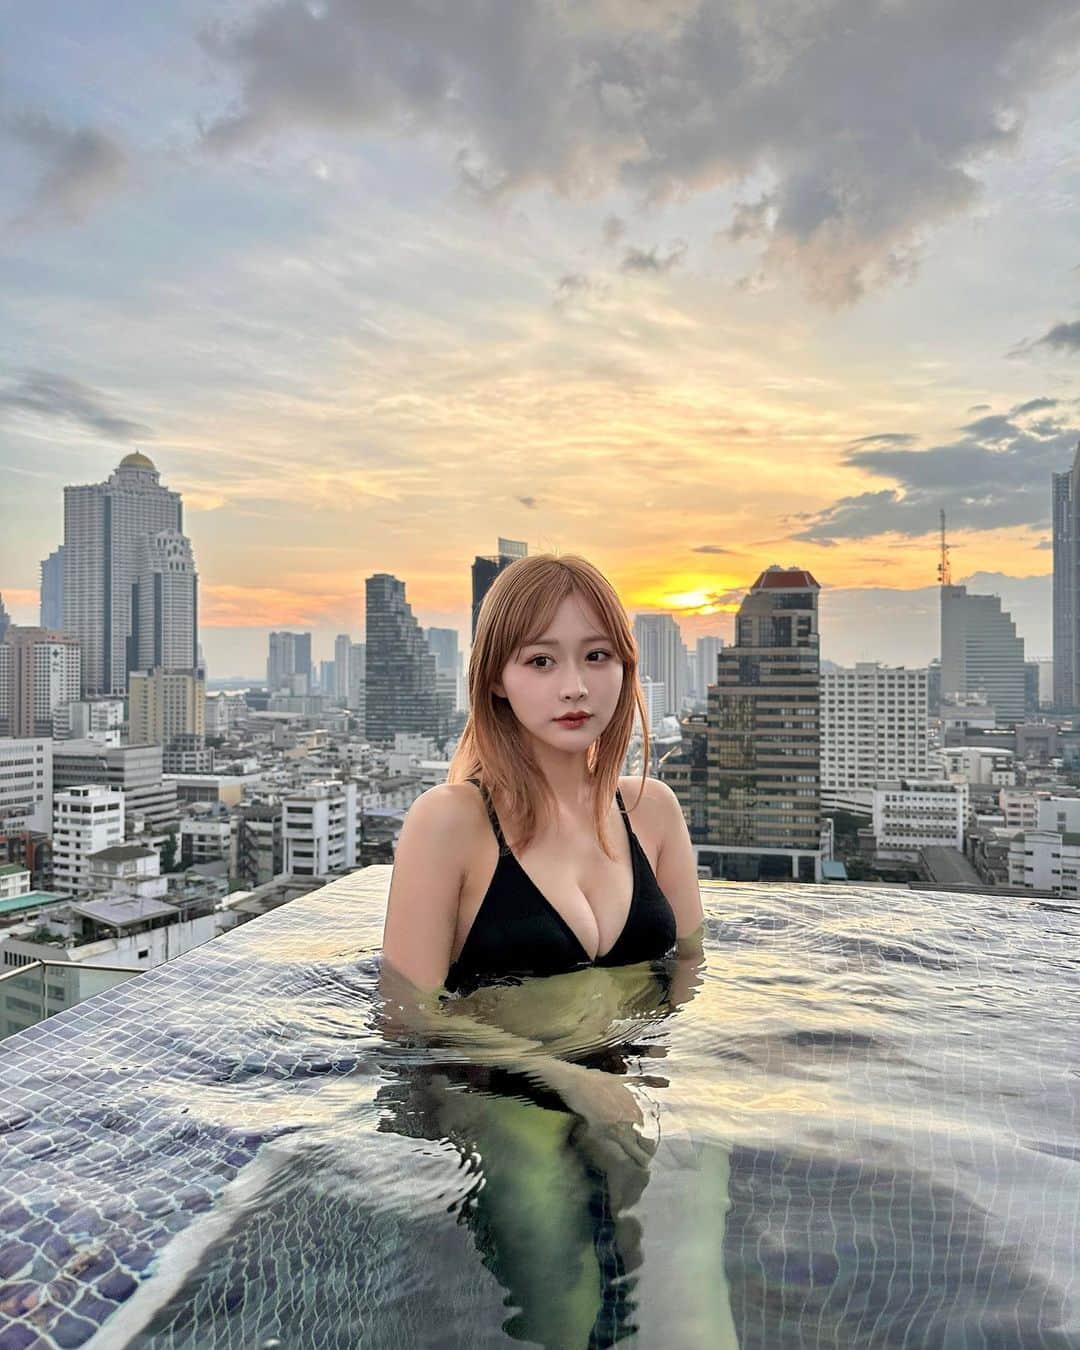 森下愛里沙(もりしたありさ) さんのインスタグラム写真 - (森下愛里沙(もりしたありさ) Instagram)「ㅤㅤㅤㅤㅤㅤㅤㅤㅤㅤㅤㅤㅤ ㅤㅤㅤㅤㅤㅤㅤㅤㅤㅤㅤㅤㅤ ㅤㅤㅤㅤㅤㅤㅤㅤㅤㅤㅤㅤㅤ バンコクで泊まったホテルのプール お部屋からもプールの景色が見れるんだぁ めちゃくちゃ綺麗でずっとここに居たかった。 ㅤㅤㅤㅤㅤㅤㅤㅤㅤㅤㅤㅤㅤㅤㅤㅤㅤㅤㅤㅤㅤㅤㅤㅤㅤㅤ ㅤㅤㅤㅤㅤㅤㅤㅤㅤㅤㅤㅤㅤ 今回泊まったホテルは @marriottsurawongse  ㅤㅤㅤㅤㅤㅤㅤㅤㅤㅤㅤㅤㅤ ㅤㅤㅤㅤㅤㅤㅤㅤㅤㅤㅤㅤㅤ 水着👙 @shein_japan  ㅤㅤㅤㅤㅤㅤㅤㅤㅤㅤㅤㅤㅤ  試すたび、好きが見つかる。届くたび、好きが増えてく。 がキャッチフレーズでSHEINは本当にアイテムを頼むたびにどんどん好きが増えていくよね🥰 ㅤㅤㅤㅤㅤㅤㅤㅤㅤㅤㅤㅤㅤ ㅤㅤㅤㅤㅤㅤㅤㅤㅤㅤㅤㅤㅤ 11月27日までBLACK FRIDAYセールが行われていて、SHEIN30万点以上の人気アイテムが限定値下げされてて最大90パーセントOFFのアイテムもあるの🫶🏻 ㅤㅤㅤㅤㅤㅤㅤㅤㅤㅤㅤㅤㅤ クーポンコード▶『23BF24』 ※0-5999円で15%オフ,6000円 以上のご購入で20%オフ 利用期限:2023年11月10日~2023年12月31日 ※SHEIN アカウント1つにつき 3回までクーポン利用できます⭐️ ㅤㅤㅤㅤㅤㅤㅤㅤㅤㅤㅤㅤㅤ ㅤㅤㅤㅤㅤㅤㅤㅤㅤㅤㅤㅤㅤ ㅤㅤㅤㅤㅤㅤㅤㅤㅤㅤㅤㅤㅤ  #SHEINblackfriday #ad #loveshein #SHEINGoodFinds #SHEIN購入品 #BeSHEINモデル #SHEINforAll  #saveinstyle #海外旅行 #バンコク旅行 #バンコク #タイ #タイ旅行 #バンコクマリオットホテルザスリウォン #ホテルプール #水着 #ハイトーン #ハイトーンカラー #bangkokmarriotthotelthesurawongse」11月22日 21時45分 - mini.ari